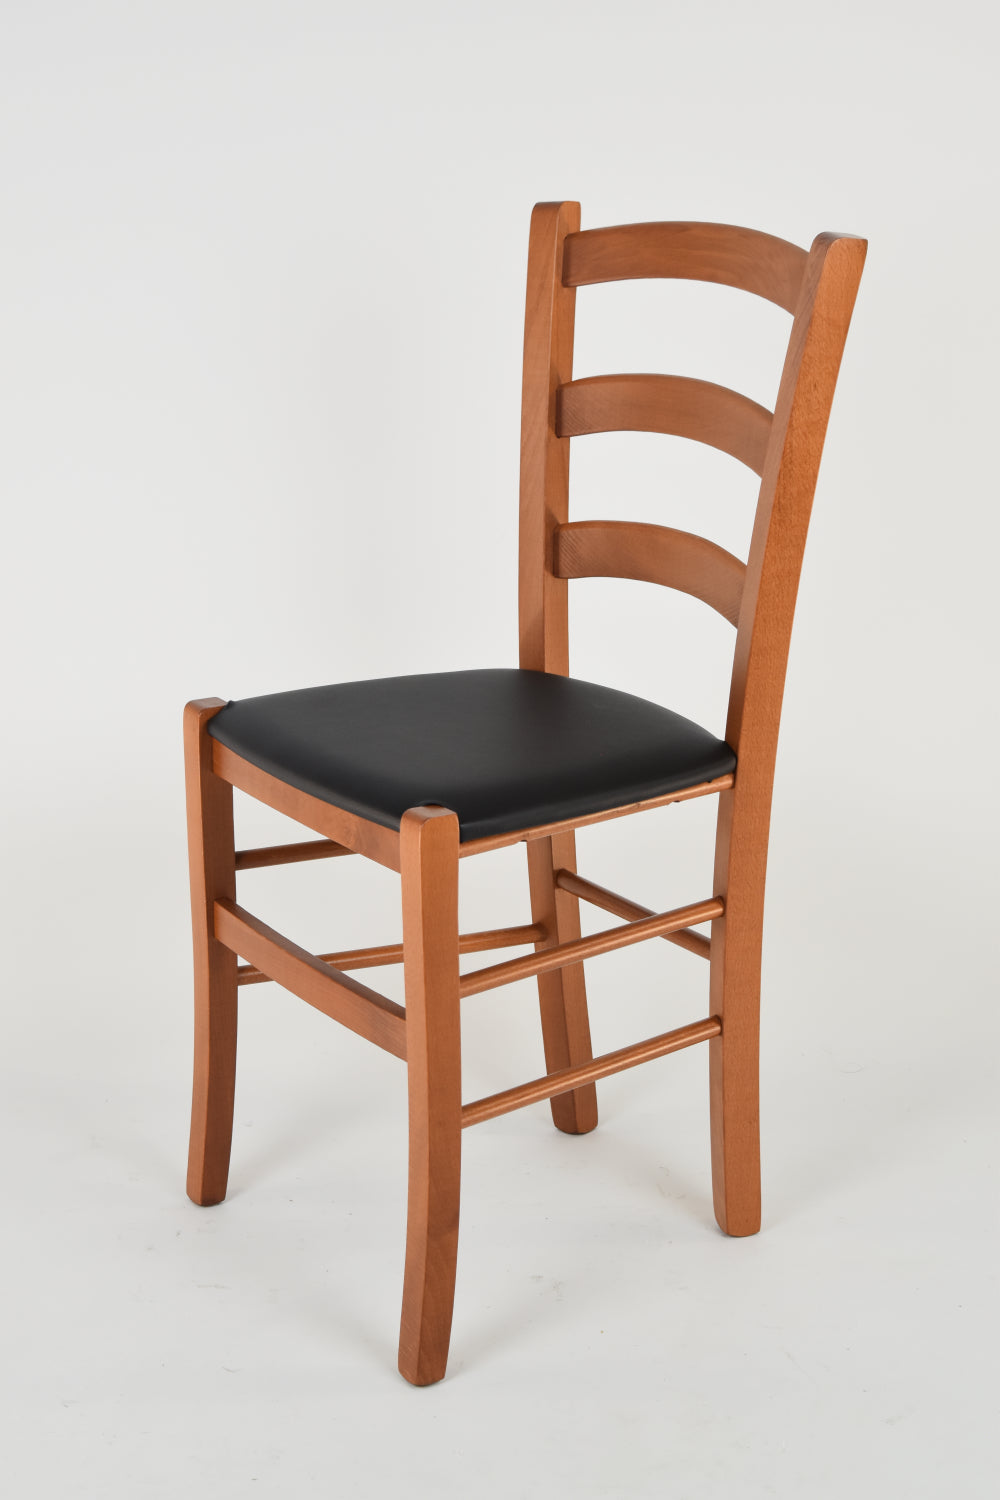 Tommychairs - Set 2 sillas de Cocina y Comedor Venice, Estructura en Madera de Haya Color Cerezo y Asiento tapizado en Polipiel Color Negro